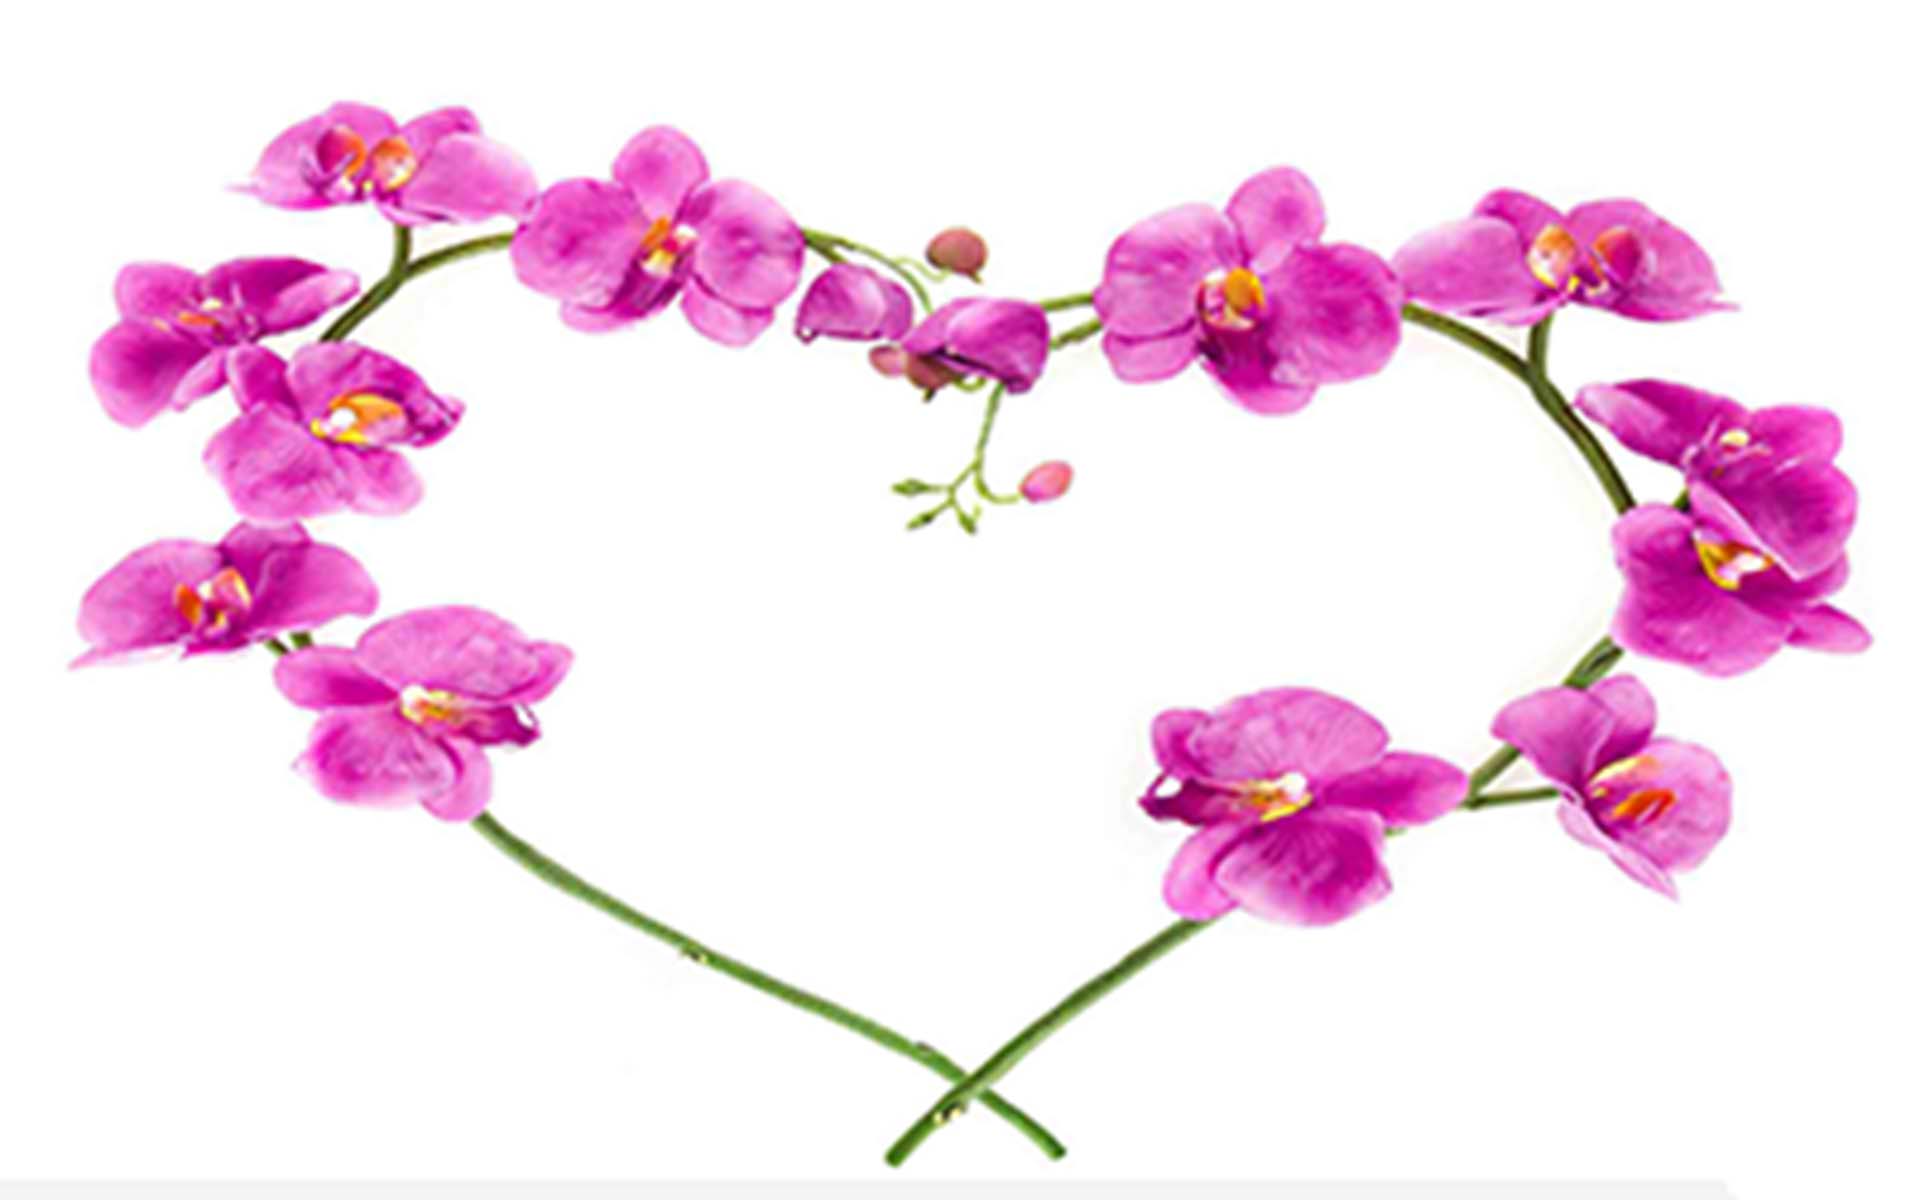 Vẻ đẹp hoang sơ của hoa phong lan đã trở thành nguồn cảm hứng cho rất nhiều tác phẩm nghệ thuật điện thoại. Tìm kiếm và tải về những hình nền hoa phong lan tuyệt đẹp, lôi cuốn để tạo nên phong cách độc đáo cho màn hình máy của bạn.